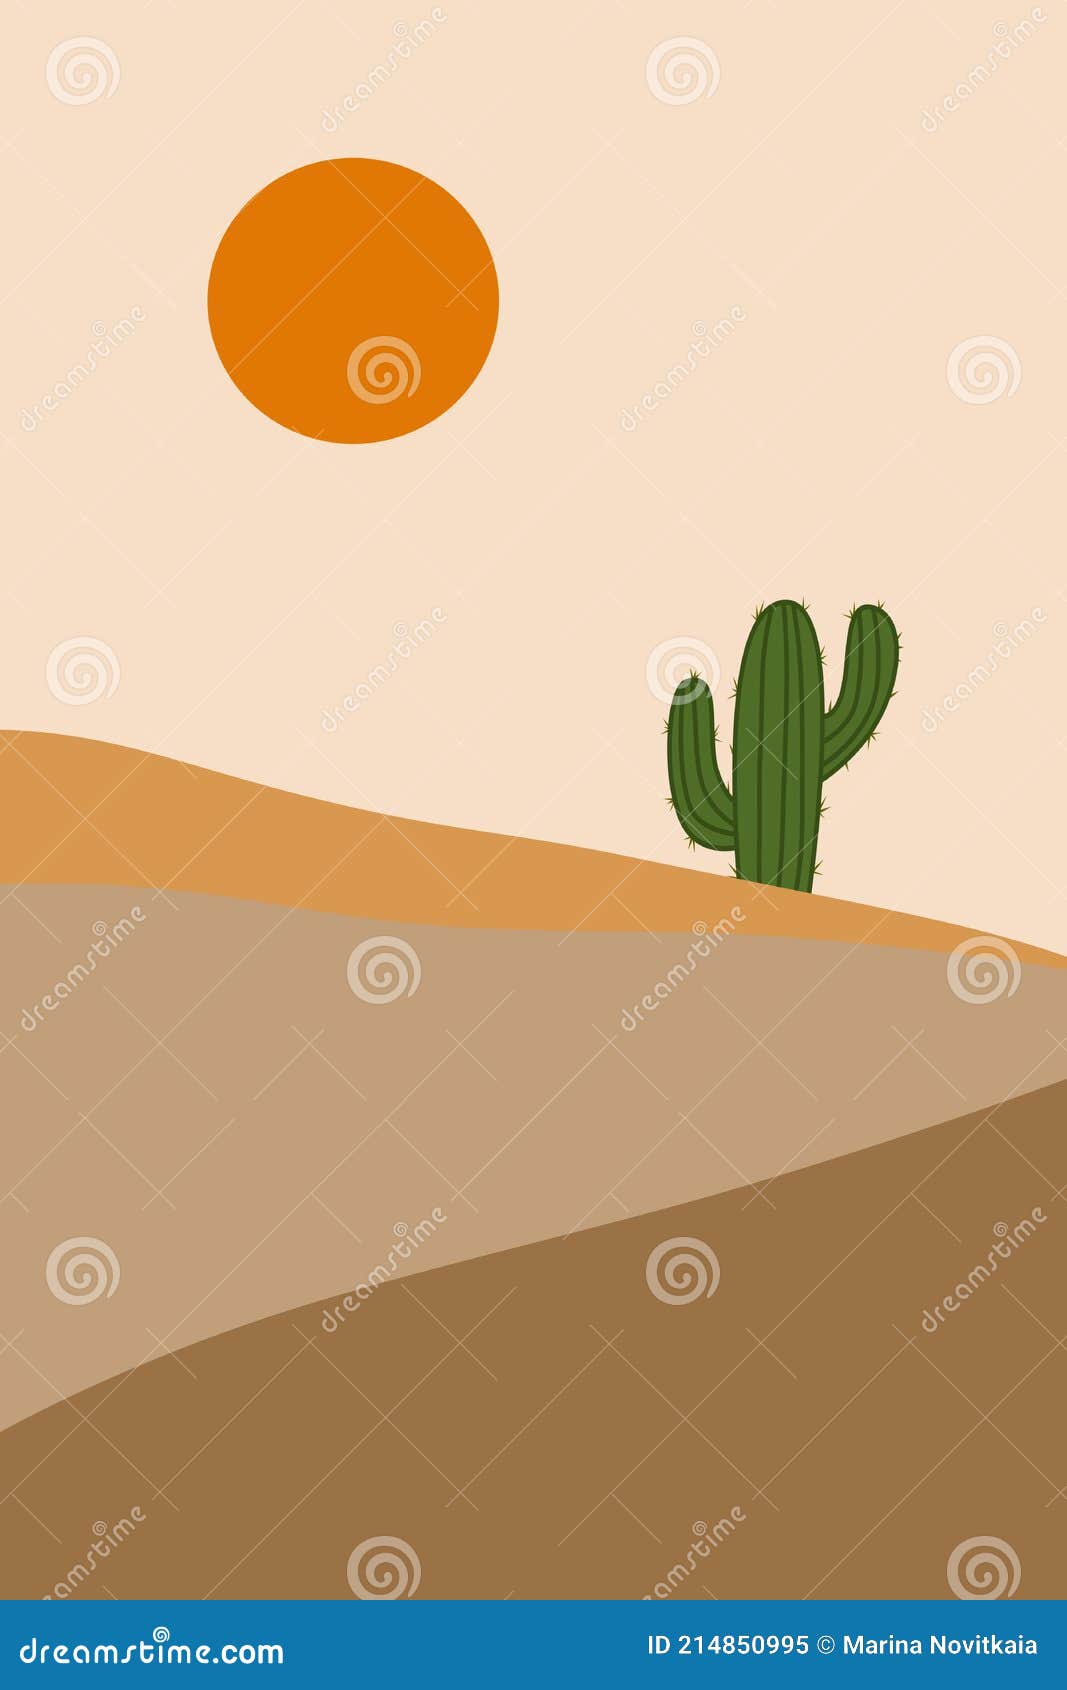 Dibujos Animados Paisaje Del Desierto Con Cactus Y Colinas. Ilustración En  Color. Stock de ilustración - Ilustración de cartel, silueta: 214850995